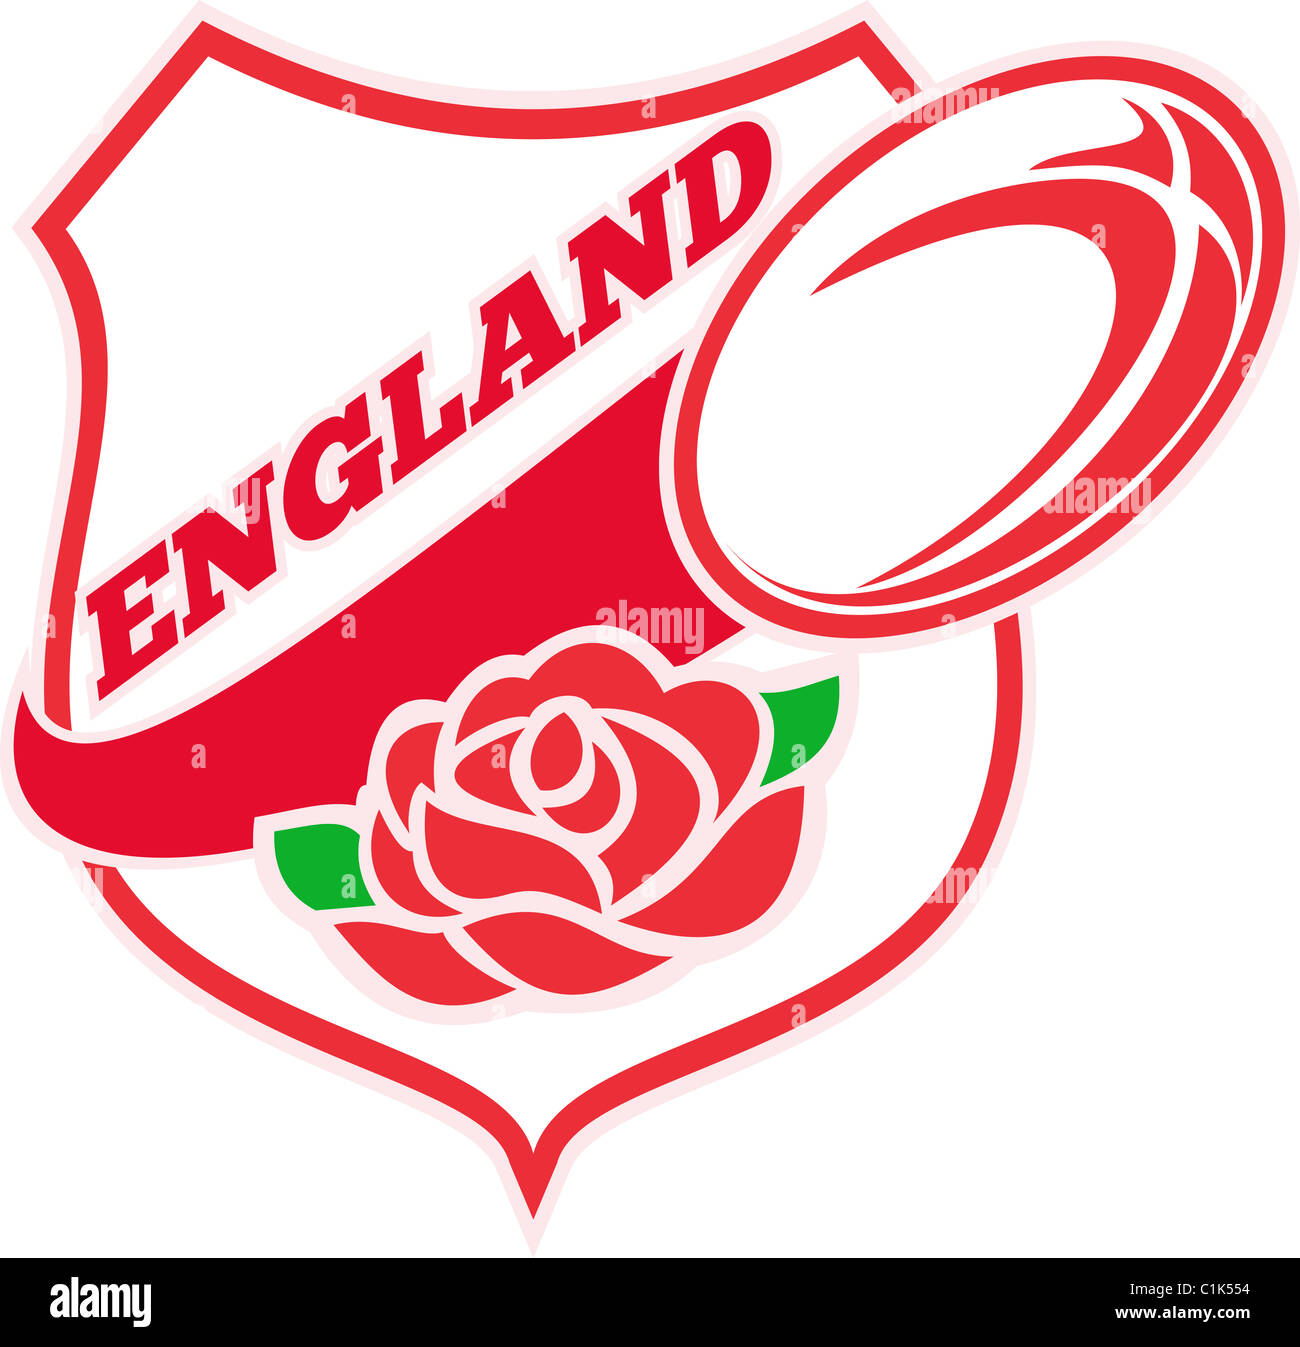 Abbildung einer roten englischen Rose in Schild mit Rugby-Ball fliegen aus und Worte "England" Stockfoto